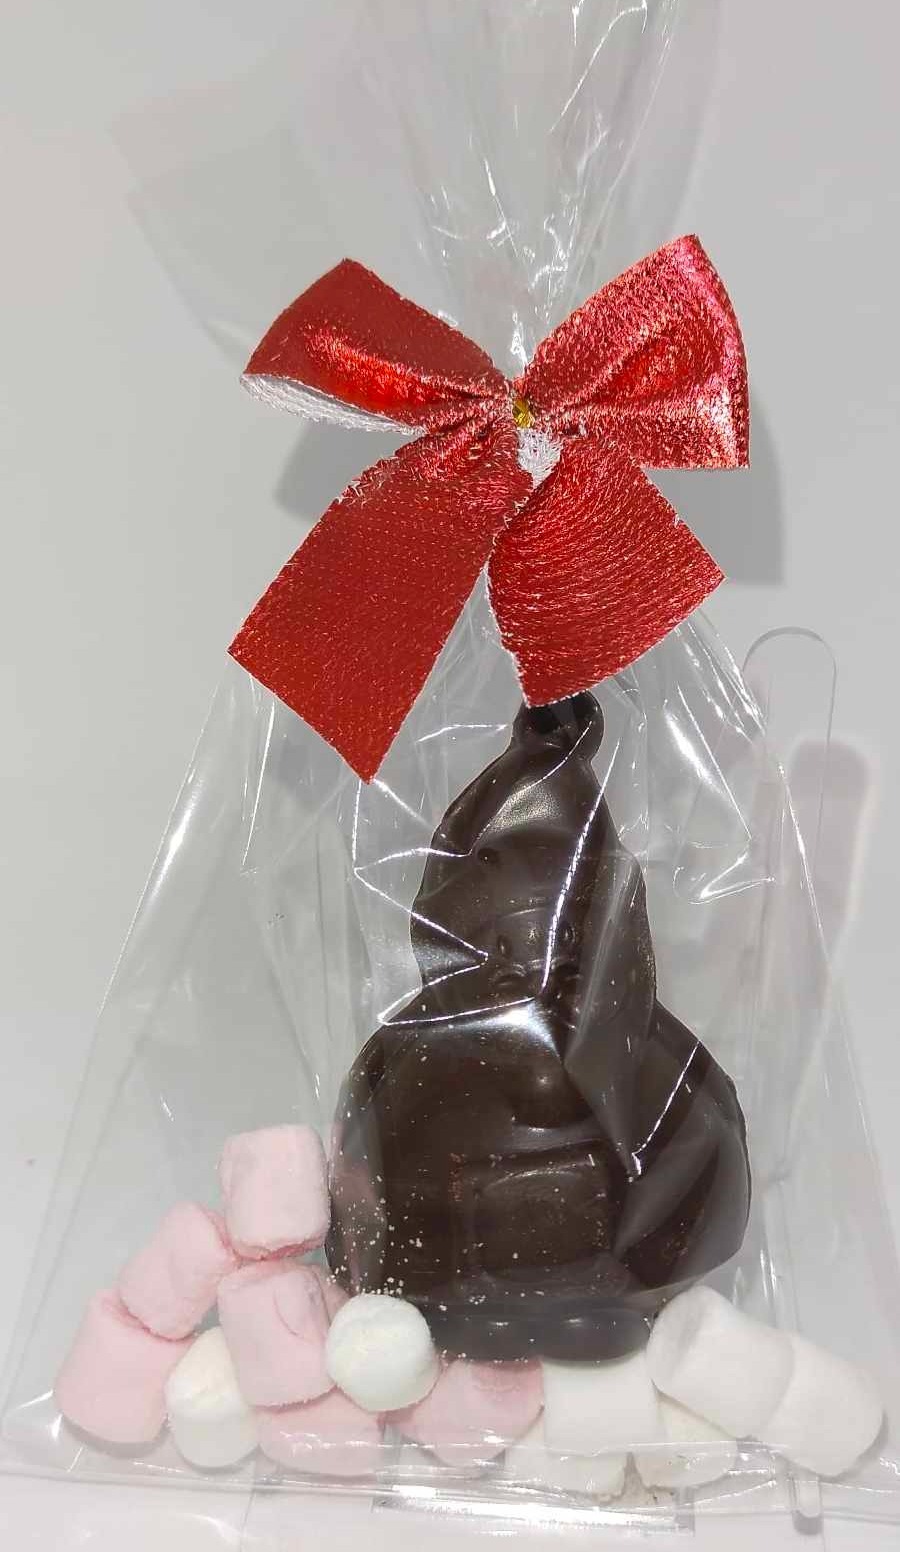 Bombe chocolat chaud artisanale Père Noël chocolat noir épices de Noël avec guimauves